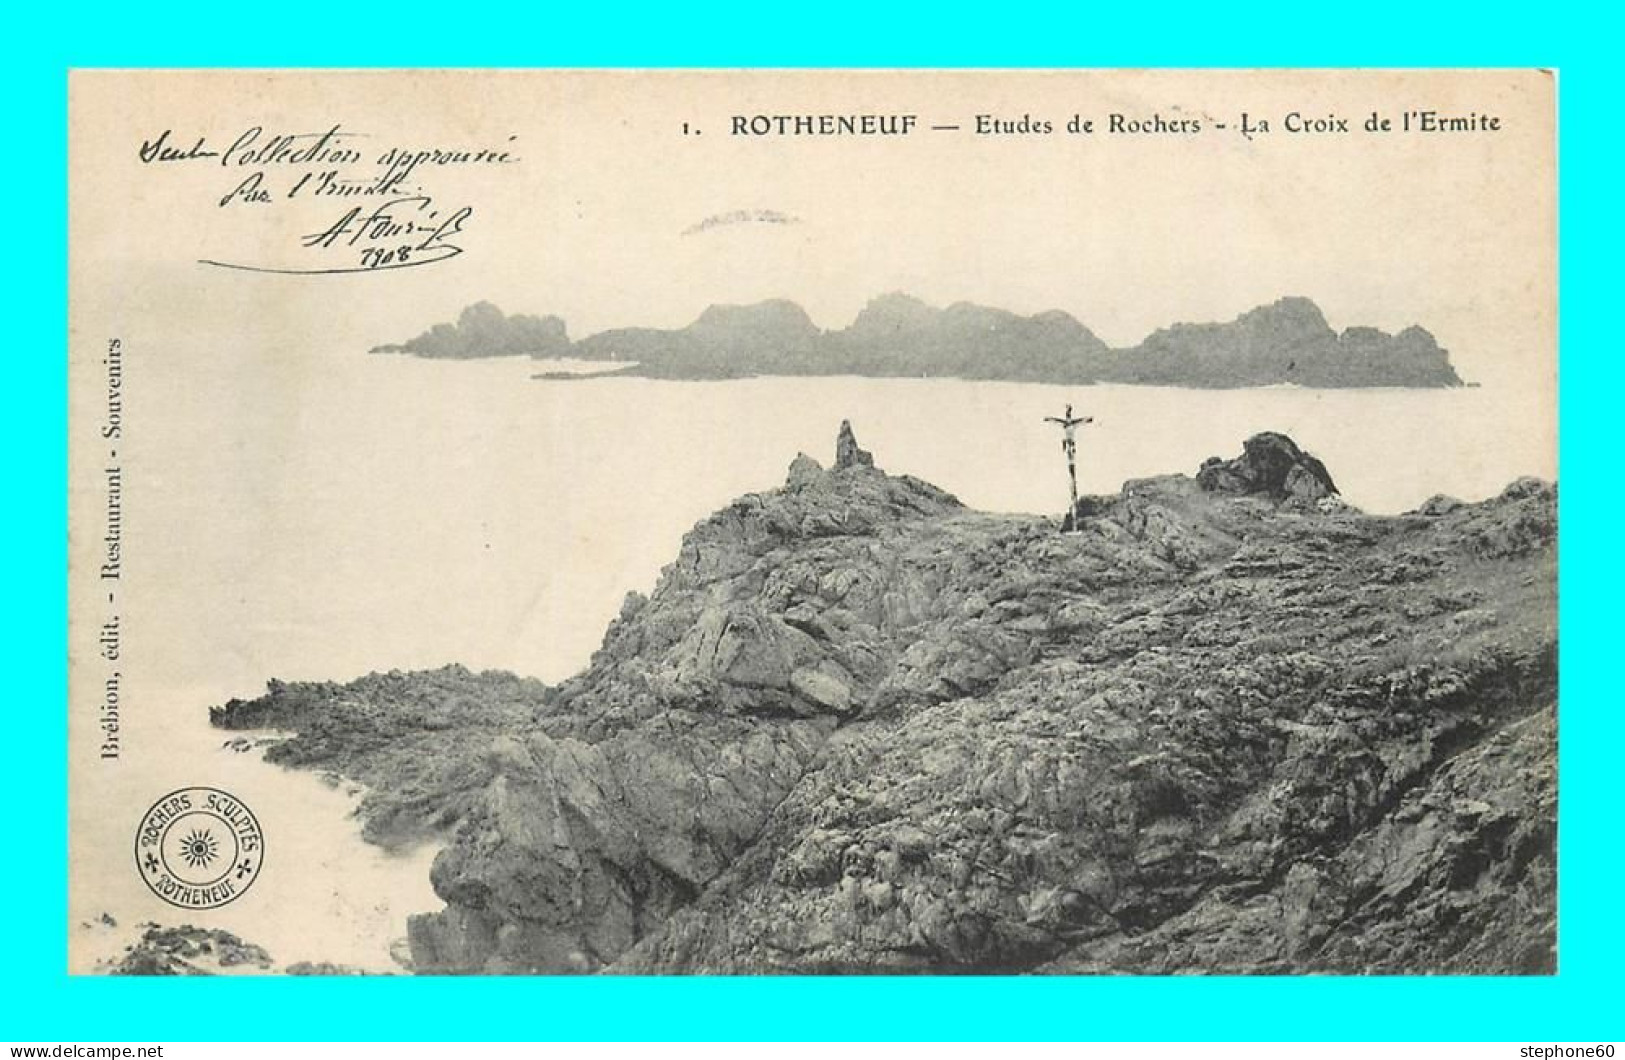 A896 / 057 35 - ROTHENEUF Etudes De Rochers Croix De L'Ermite - Rotheneuf